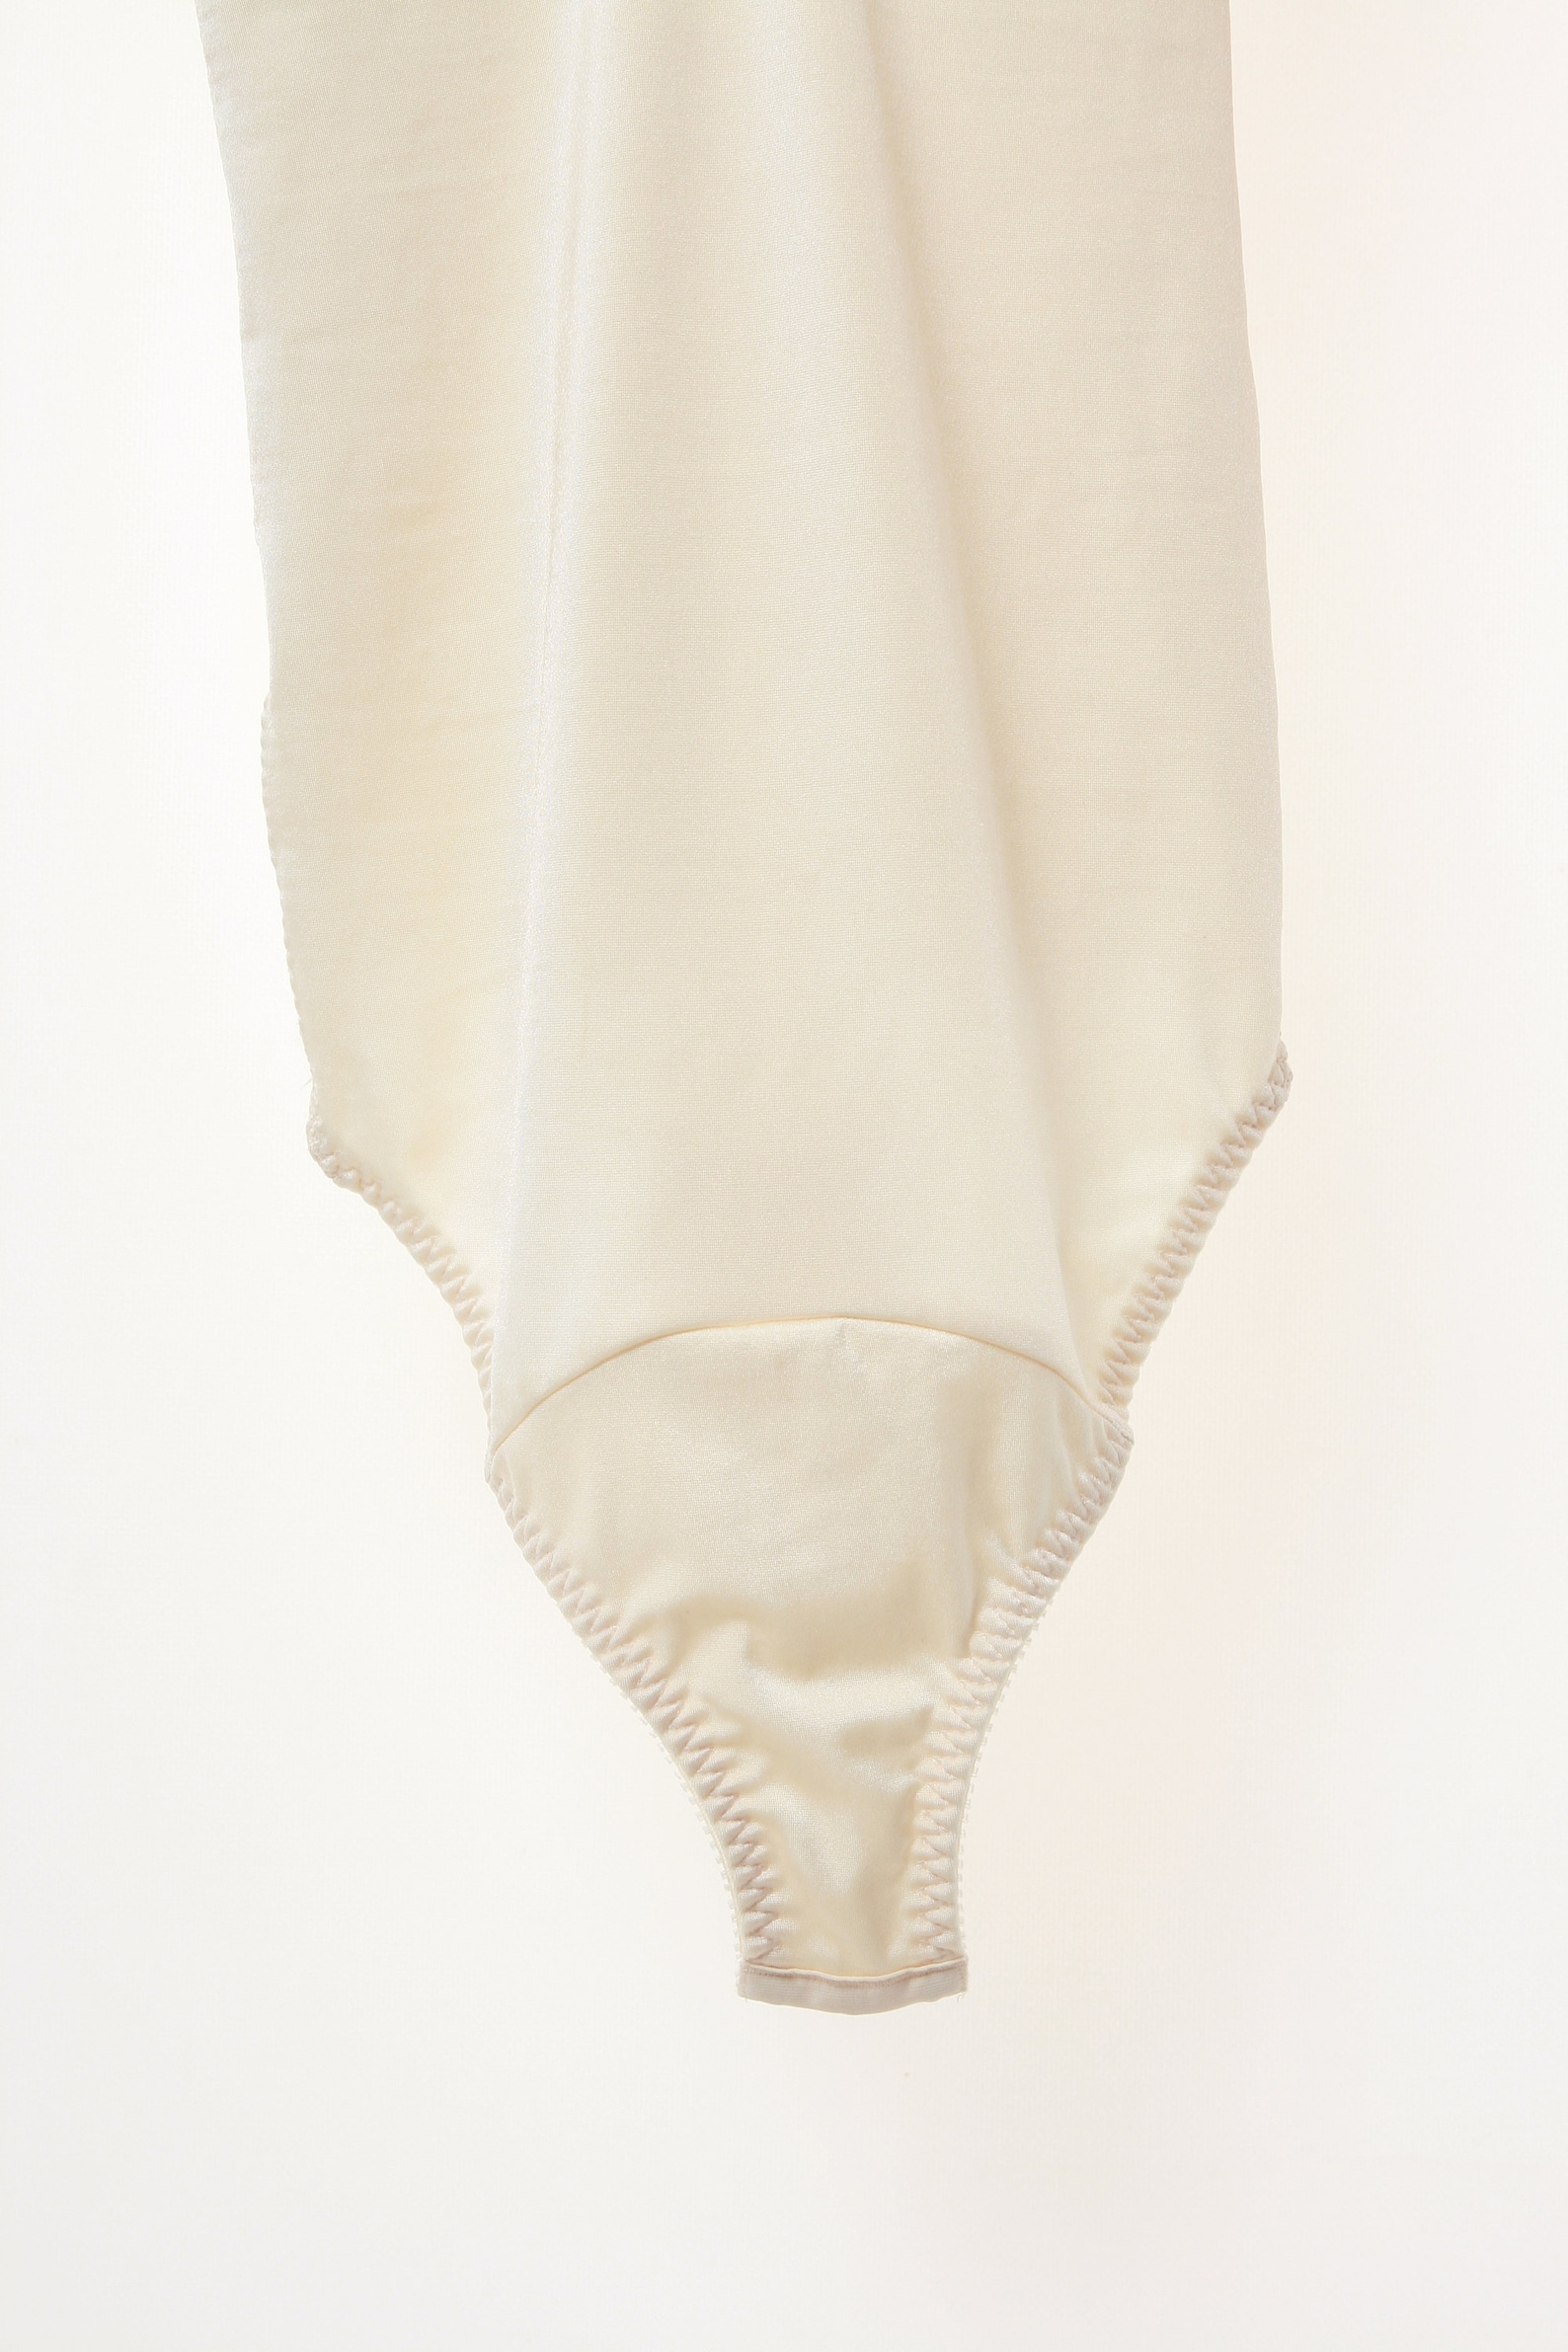 80s Vintage Palmers Body Lingerie Set Underwear Top Size 80C | Etsy